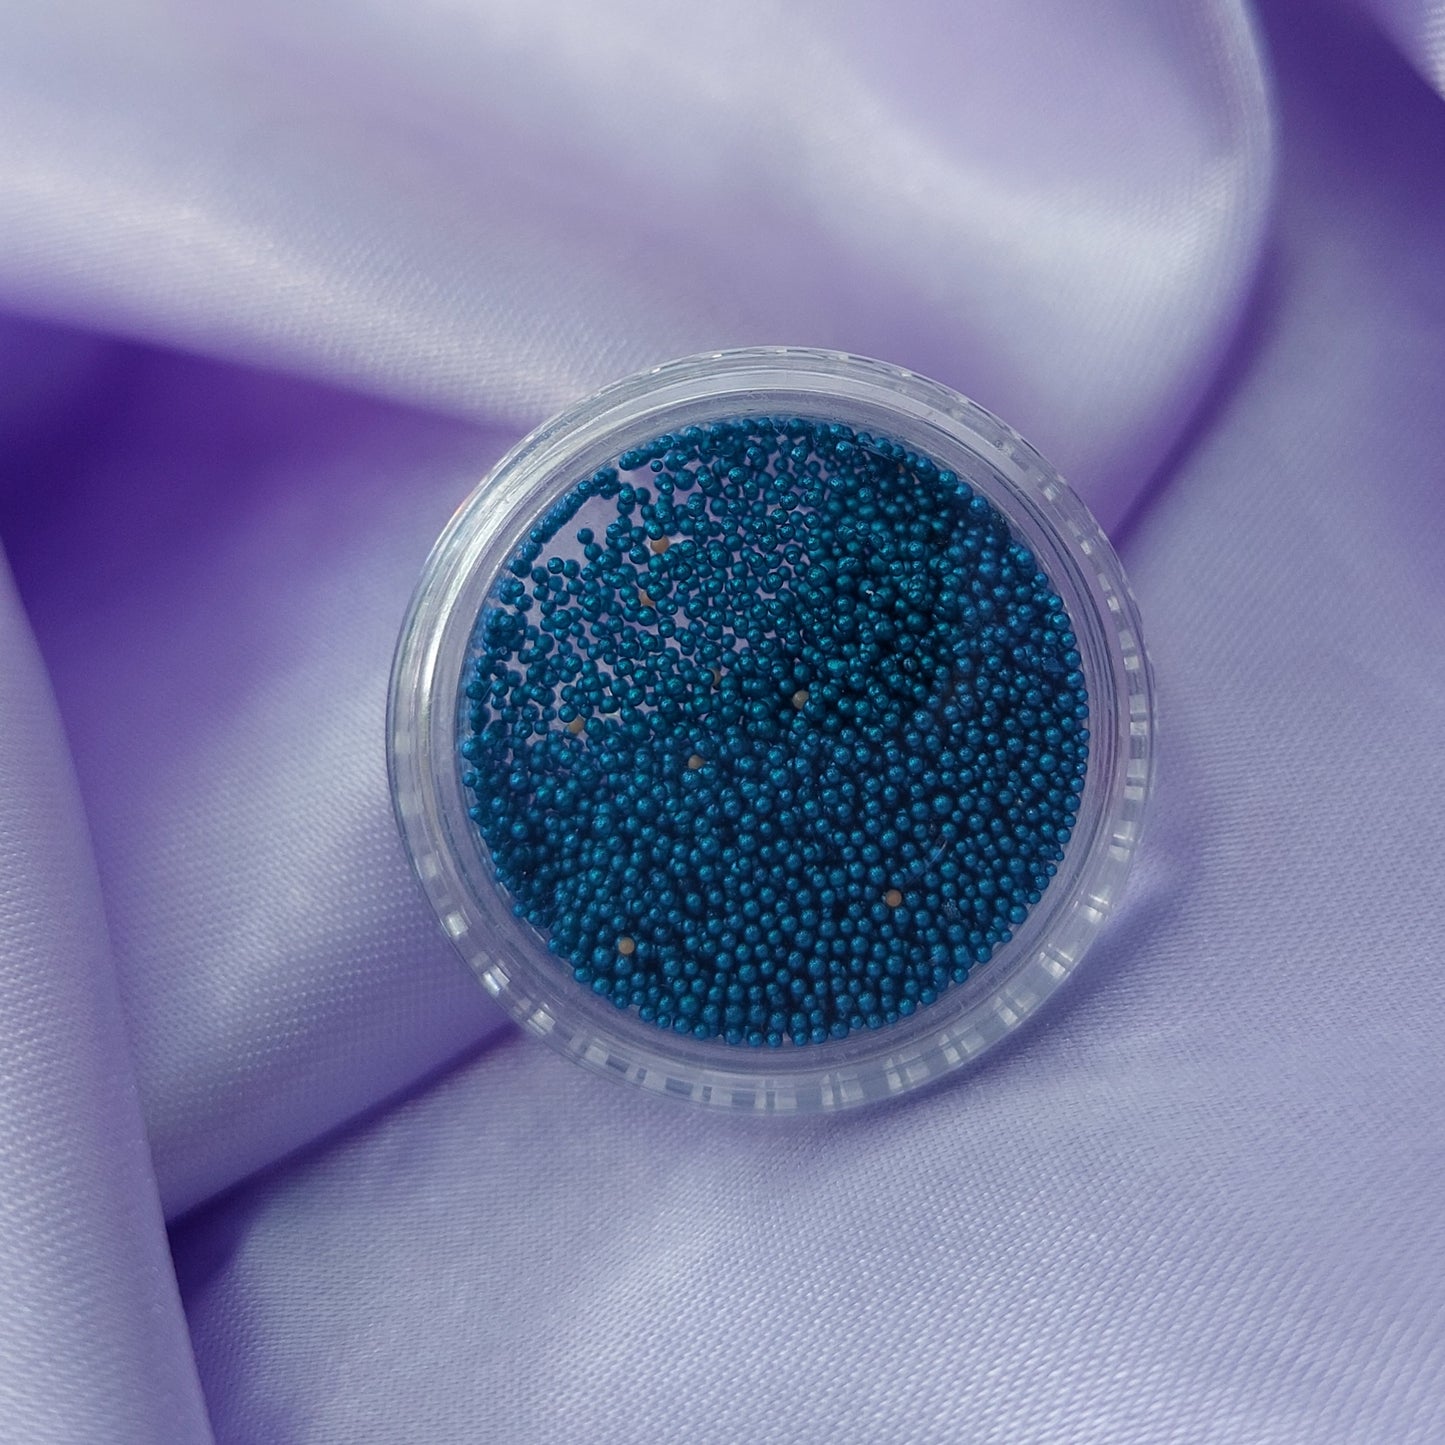 Caviar en colores fantasia🌈